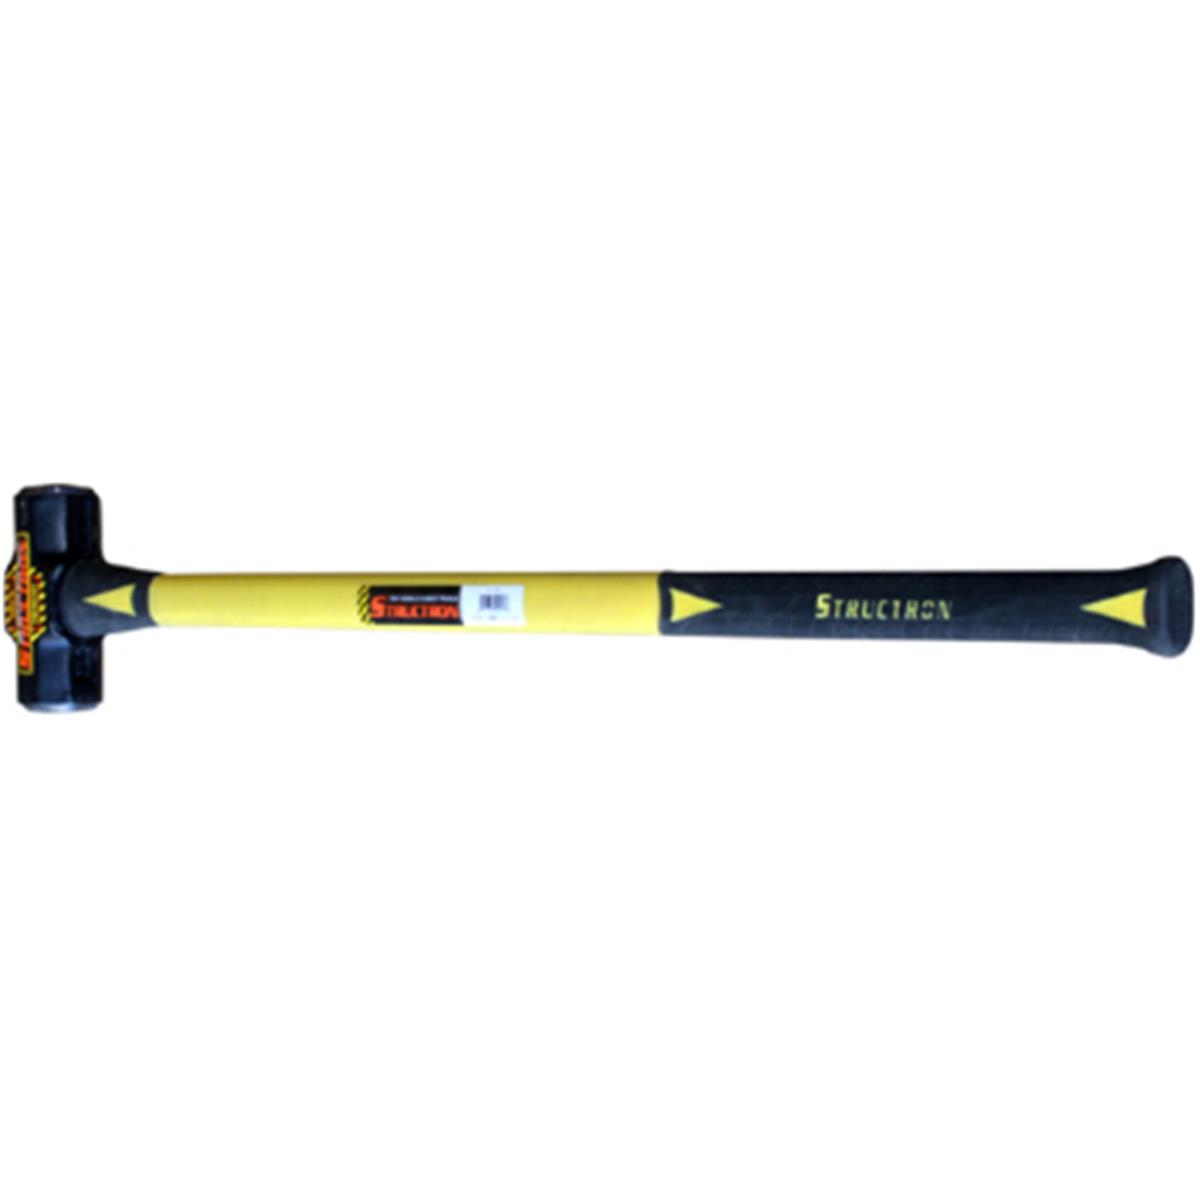 41818 10 Lbs Fiberlass Sledge Hammer